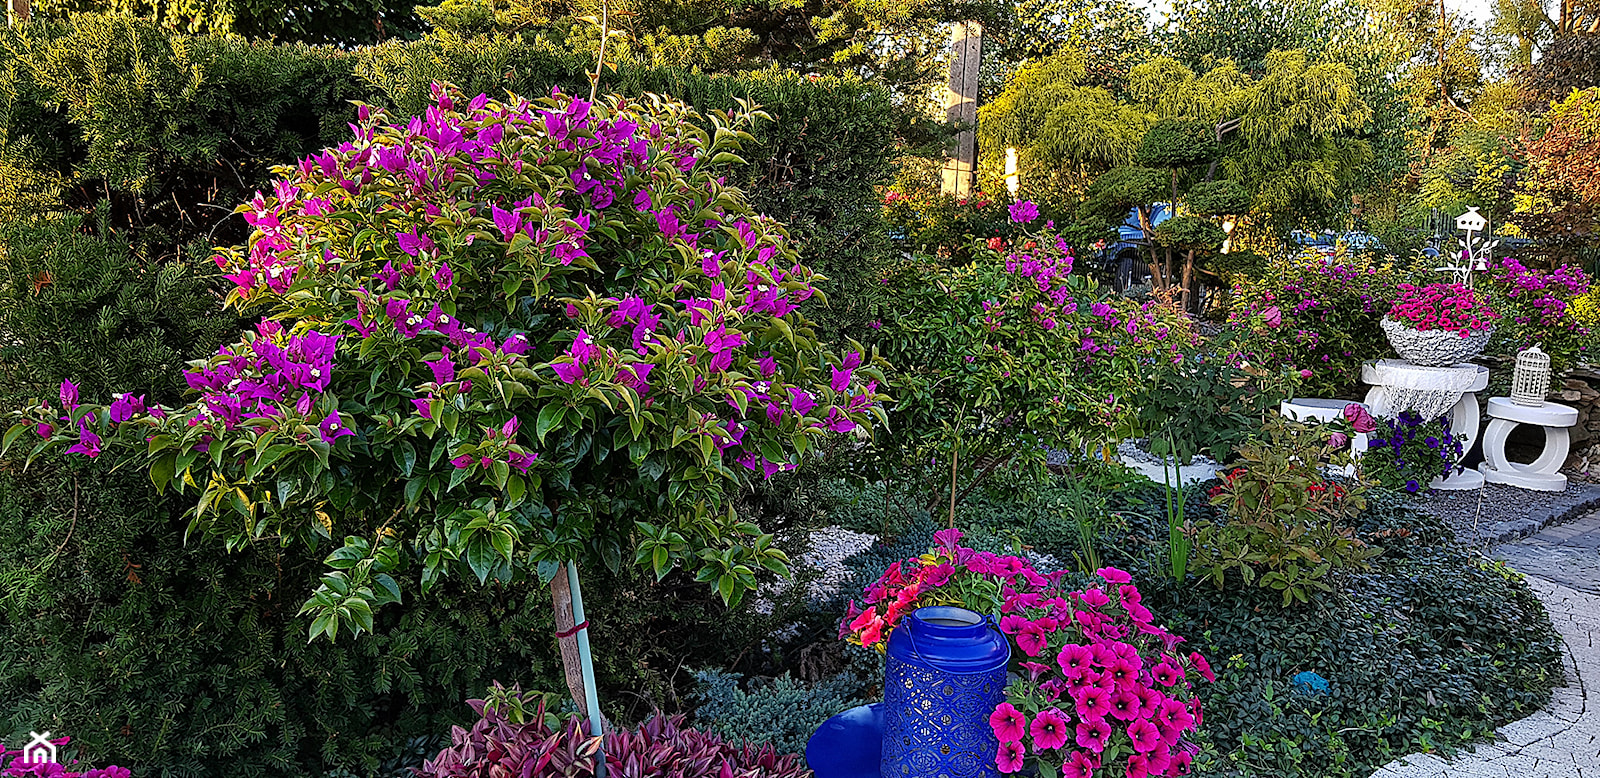 Jesienne dekoracje ozdoby do ogrodu -Kobea Ogrody i Bruki -produkcja i sprzedaż - zdjęcie od Ewa Tyrna - Homebook